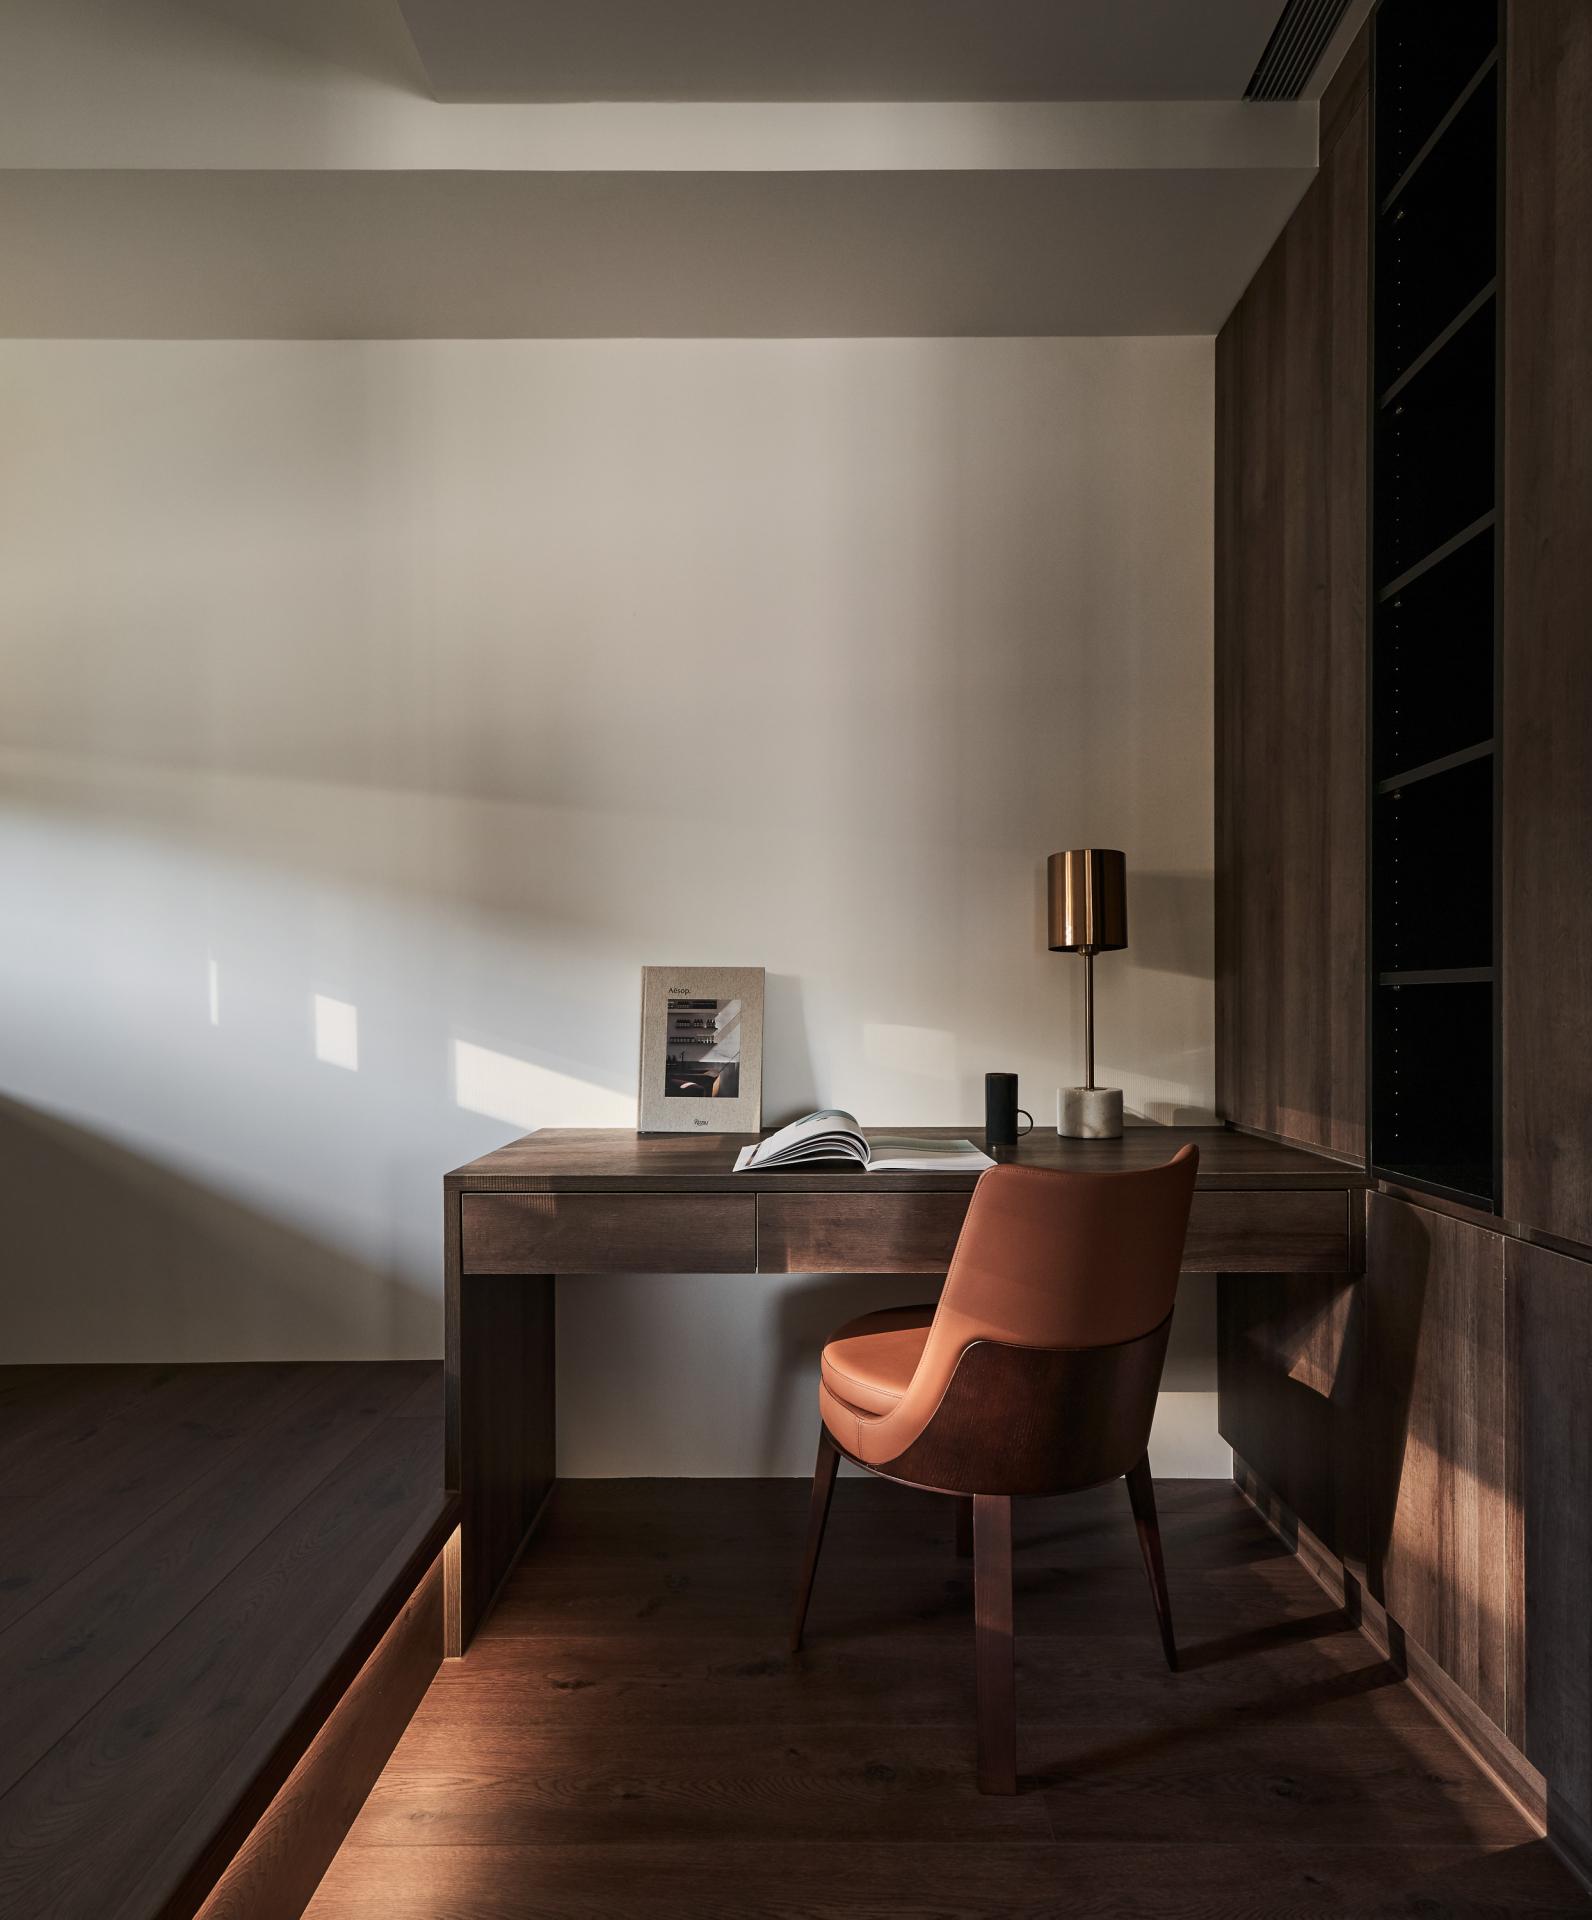 寧靜安定的溫潤空間，建構一處充滿儀式感的台北寓所